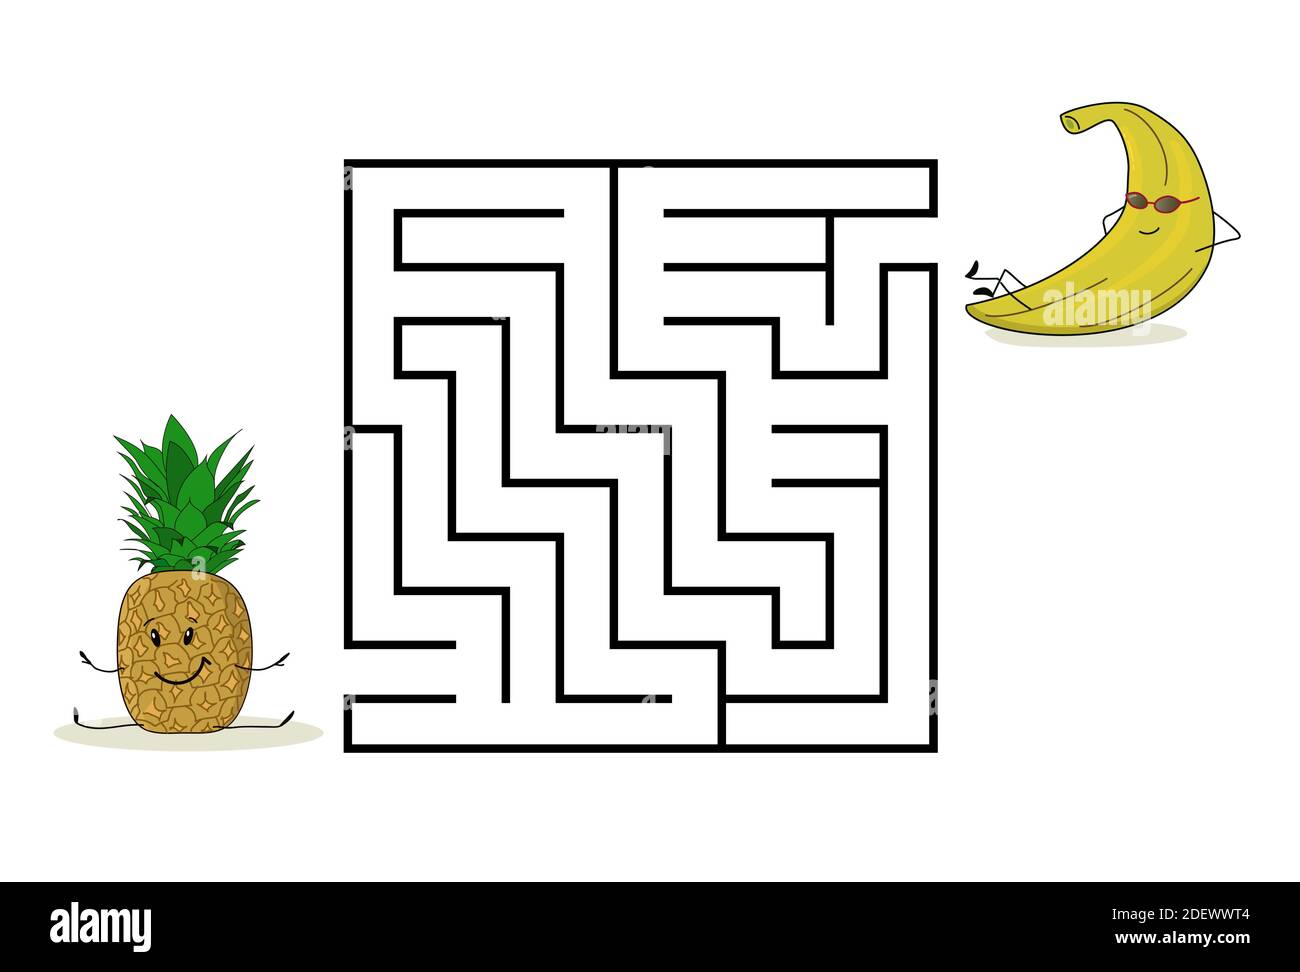 Labirinto di labirinti quadrati con personaggi cartoni animati. Carino frutta ananas e banana. Interessante gioco per bambini. Foglio di lavoro per l'istruzione. Illustrazione Vettoriale